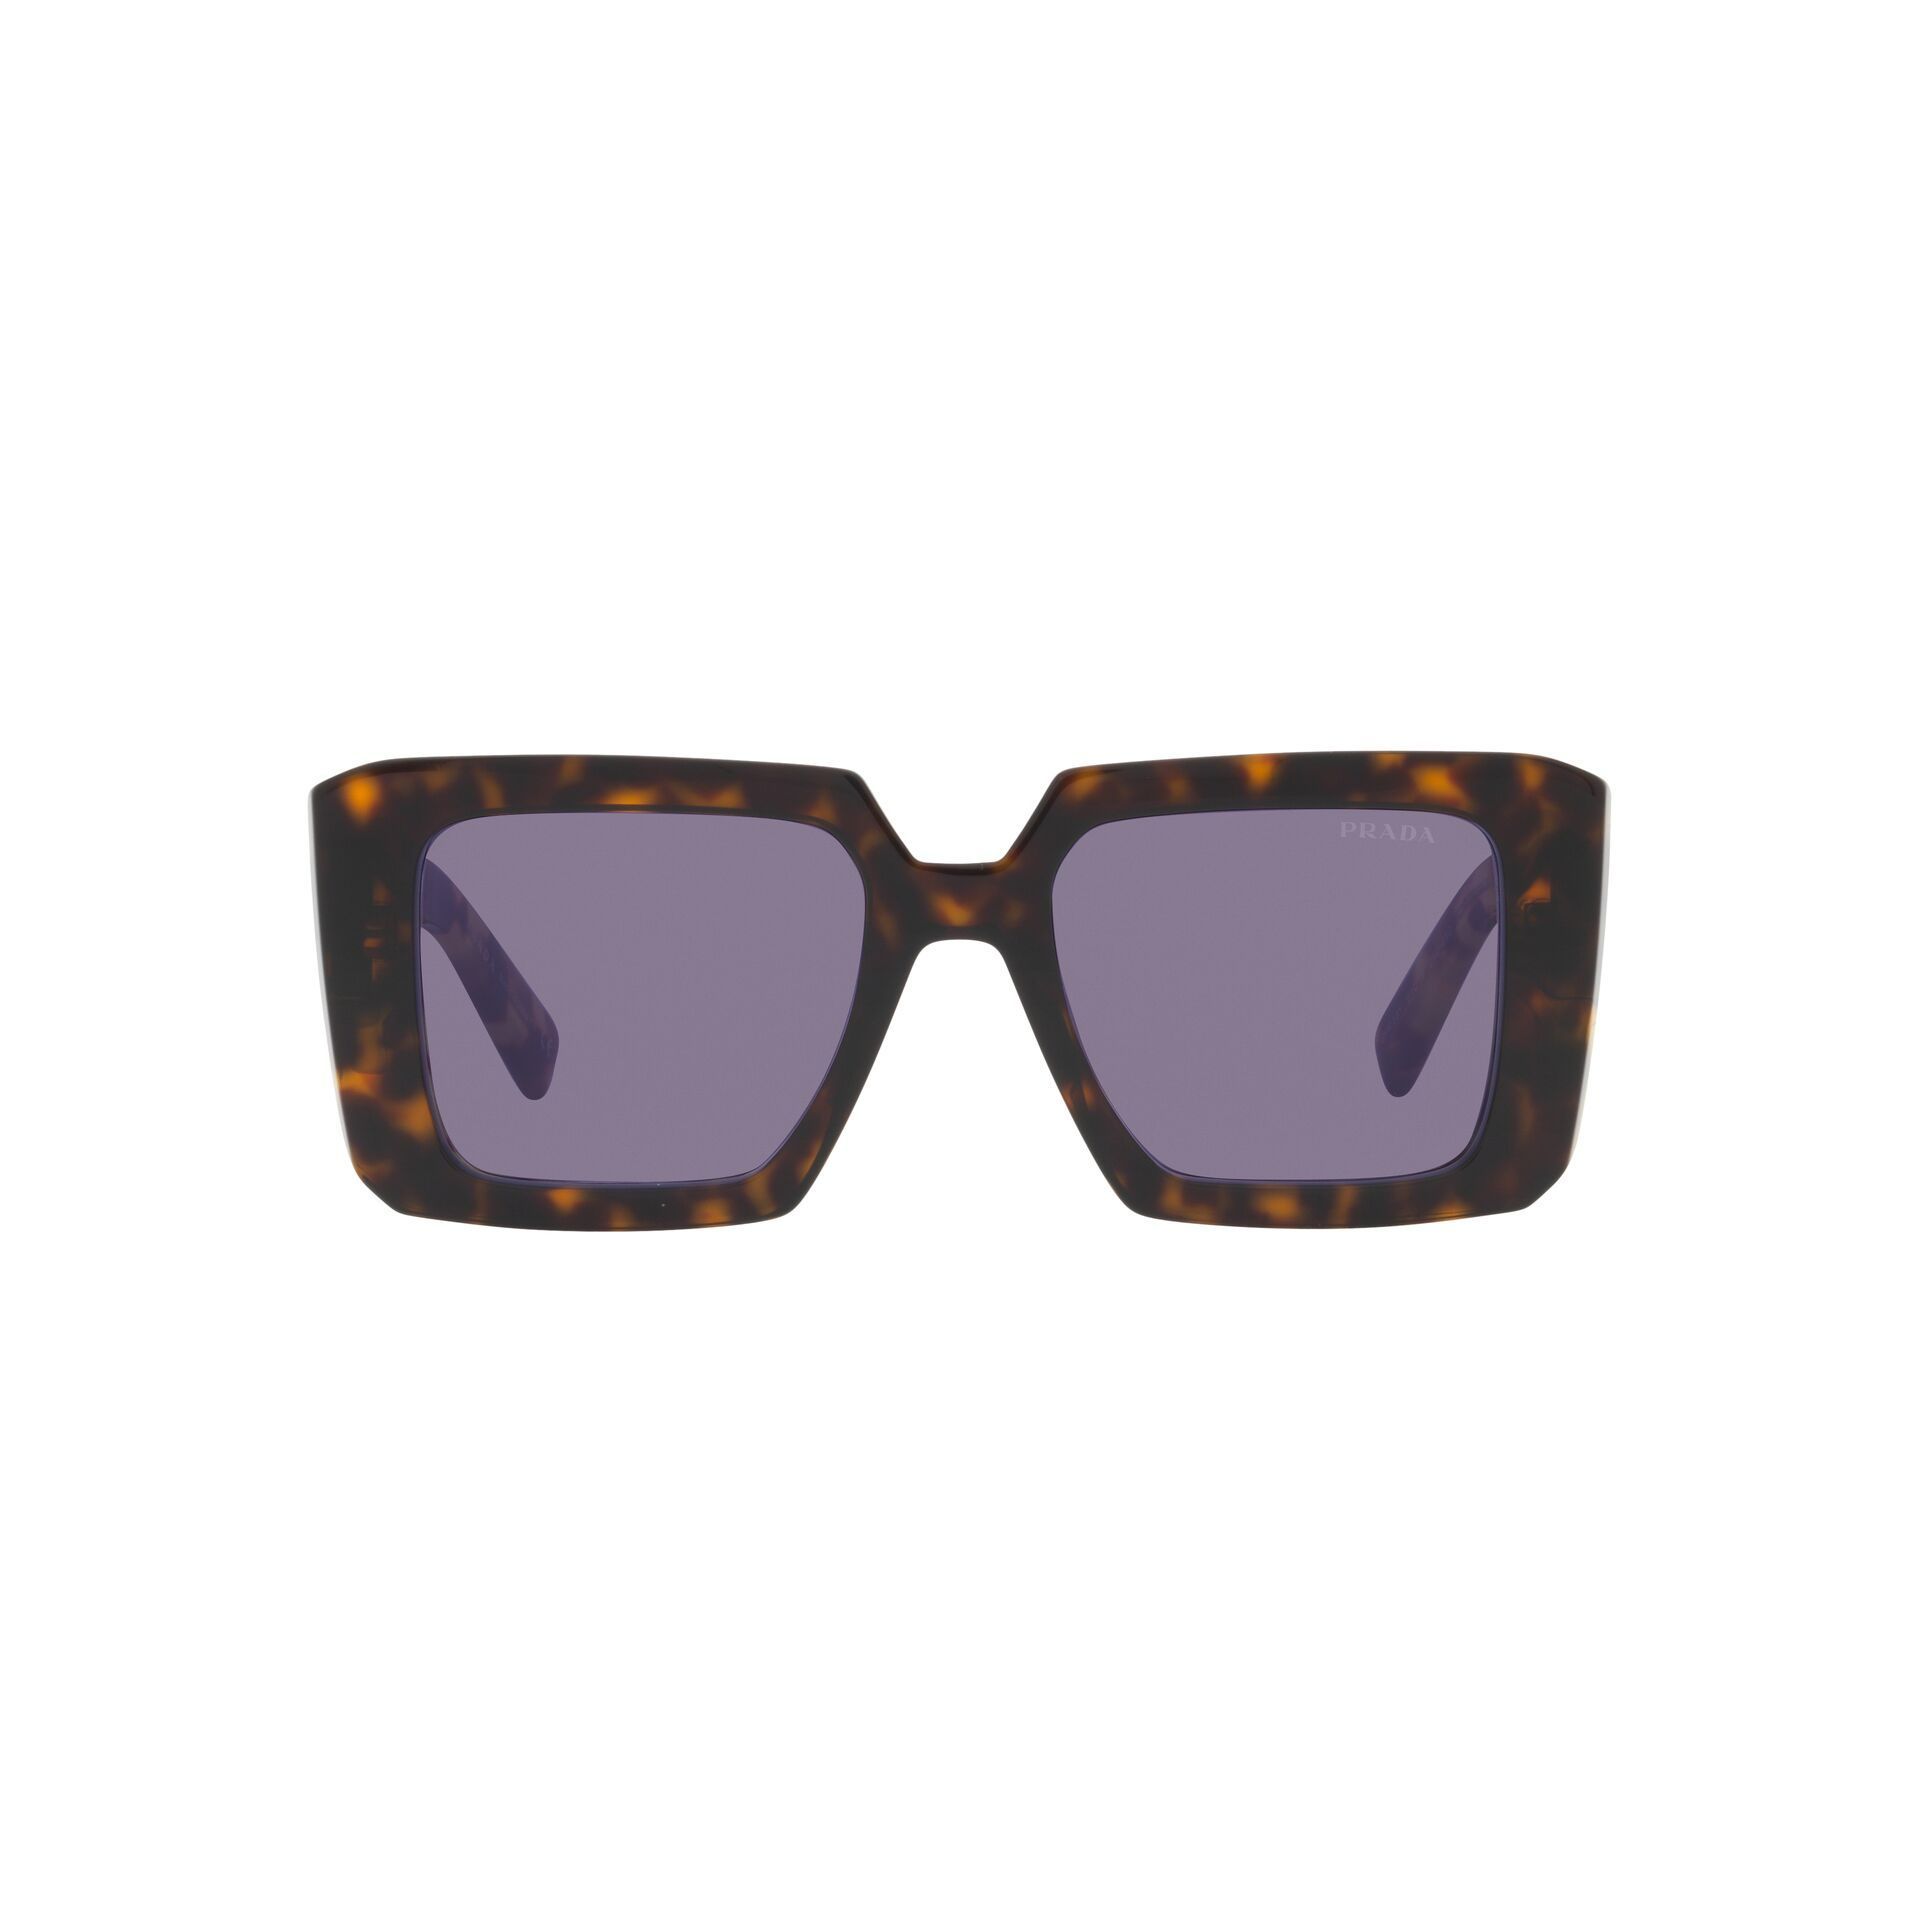 PR 23YS Rectangle Sunglasses 2AU05Q - size 51